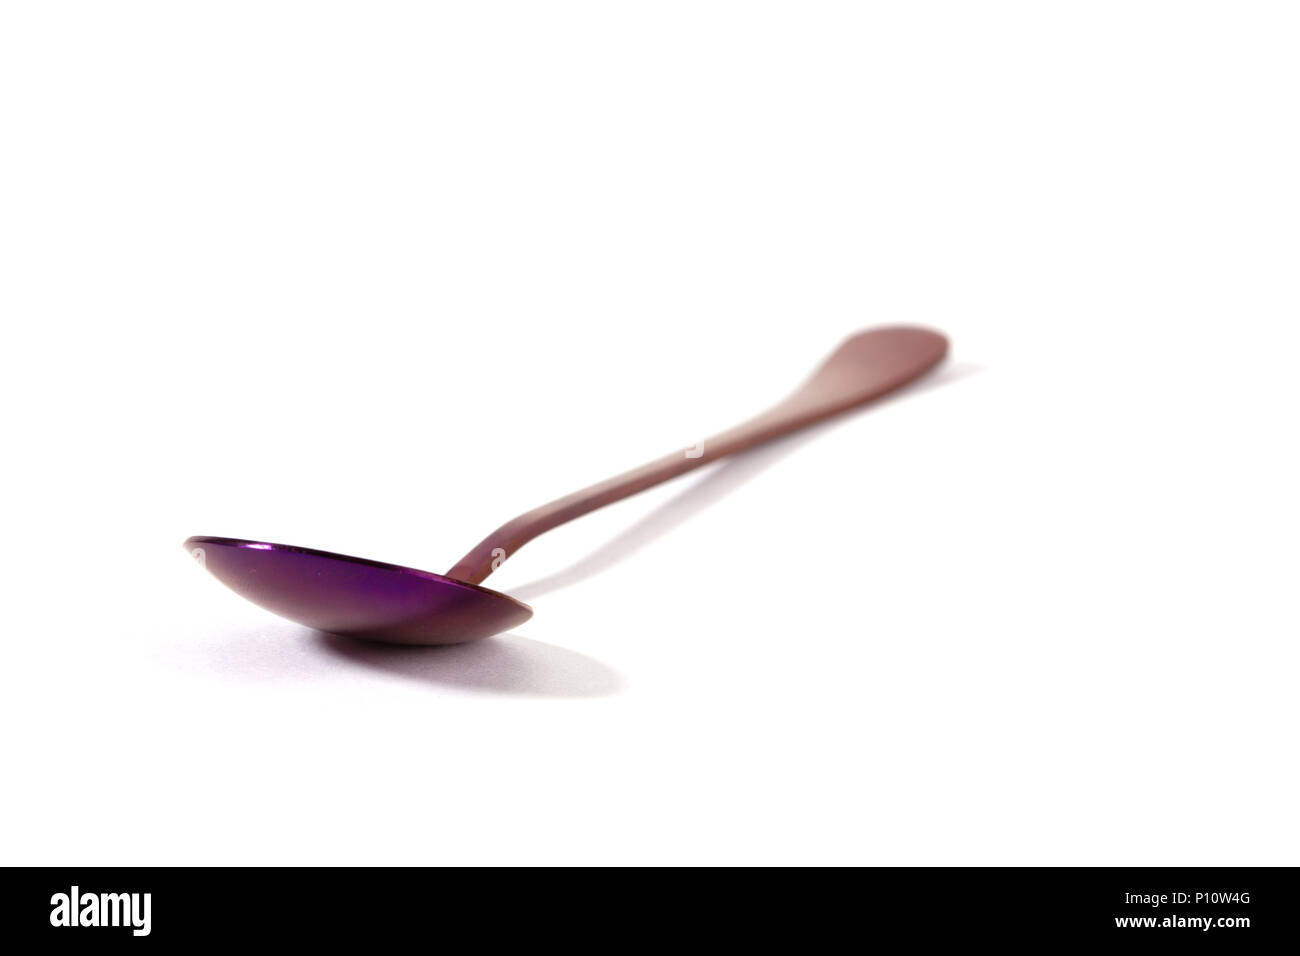 Cuchara de acero inoxidable coloridos púrpura aislado sobre fondo blanco - Enfoque en primer plano con poca profundidad de campo Foto de stock